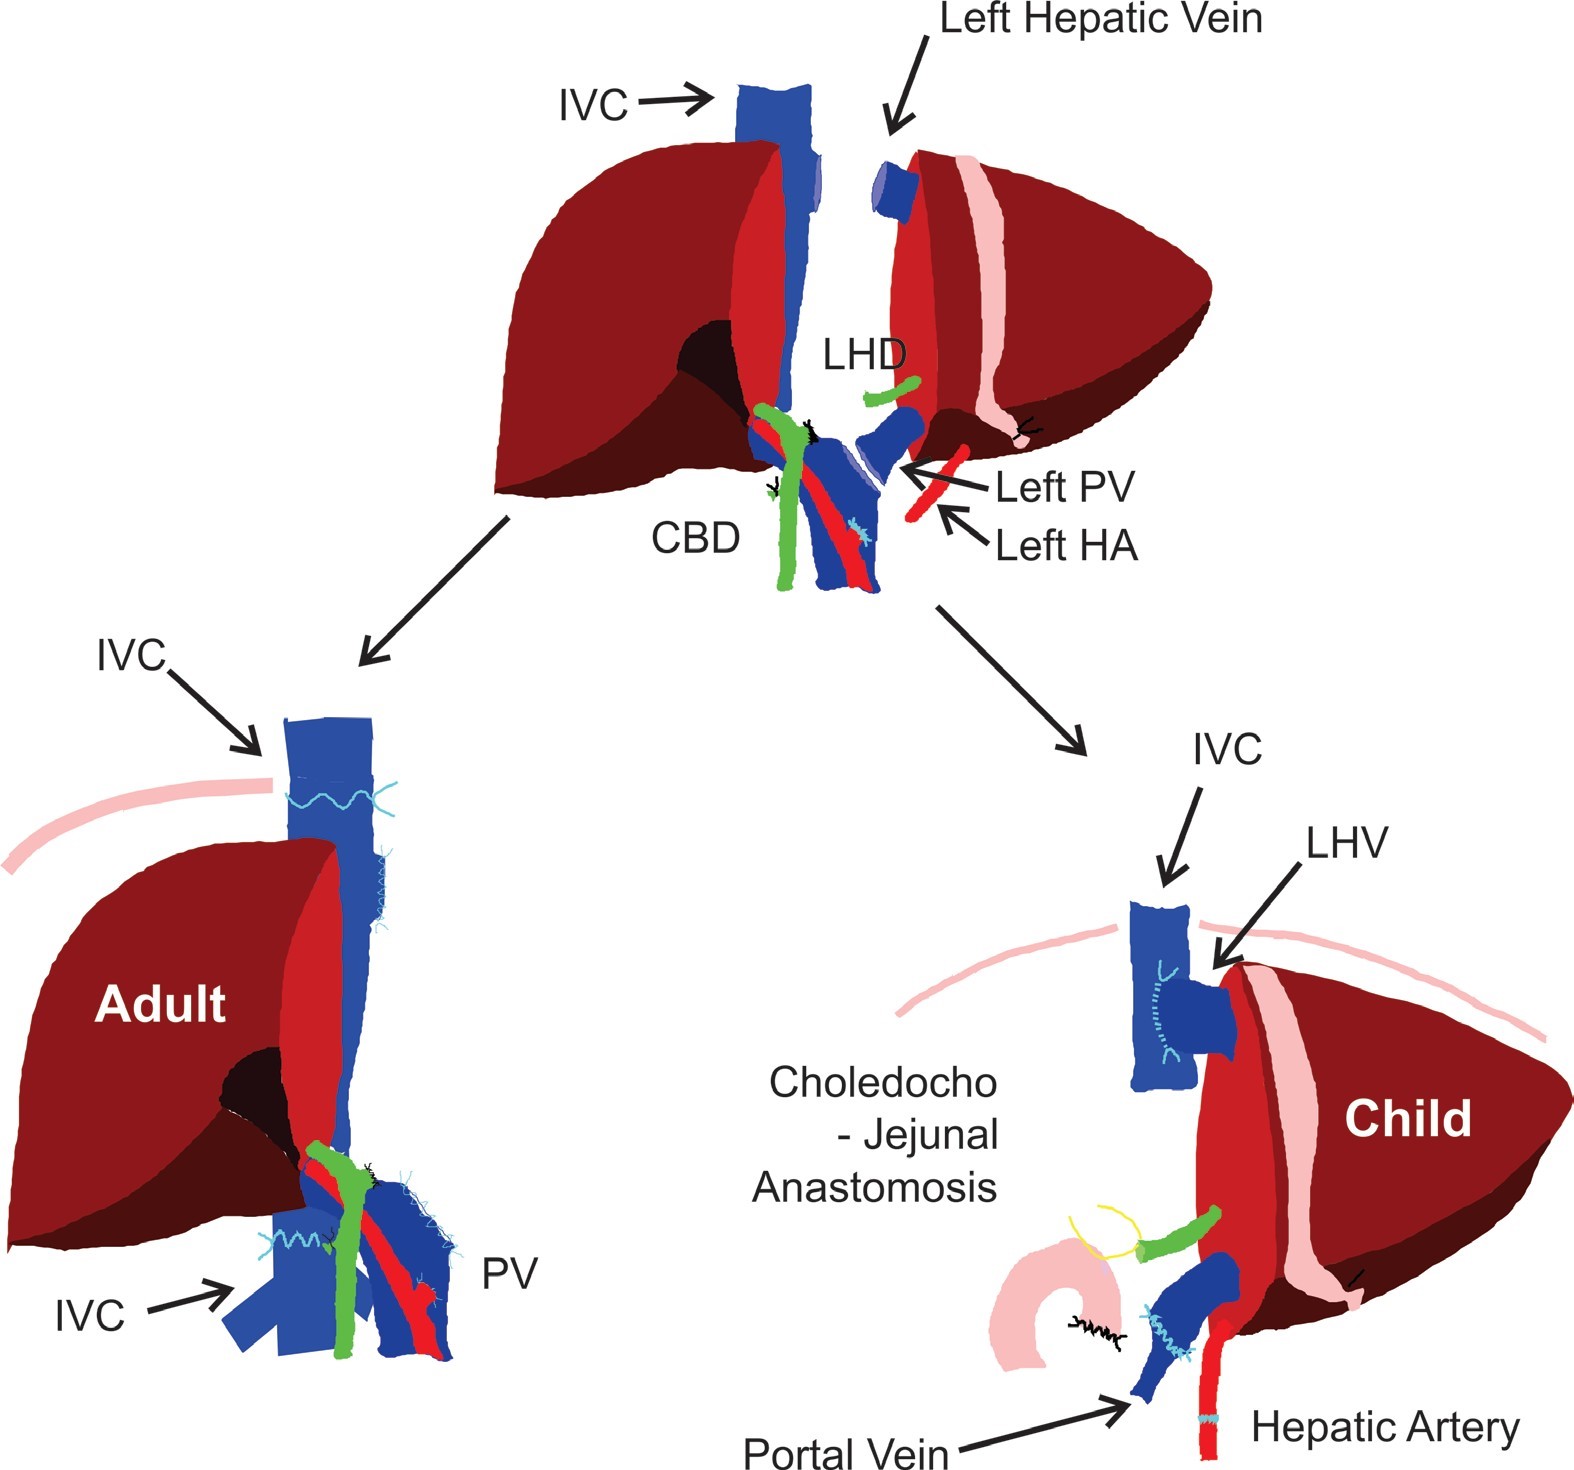 Diagram of “Split” Liver Transplantation